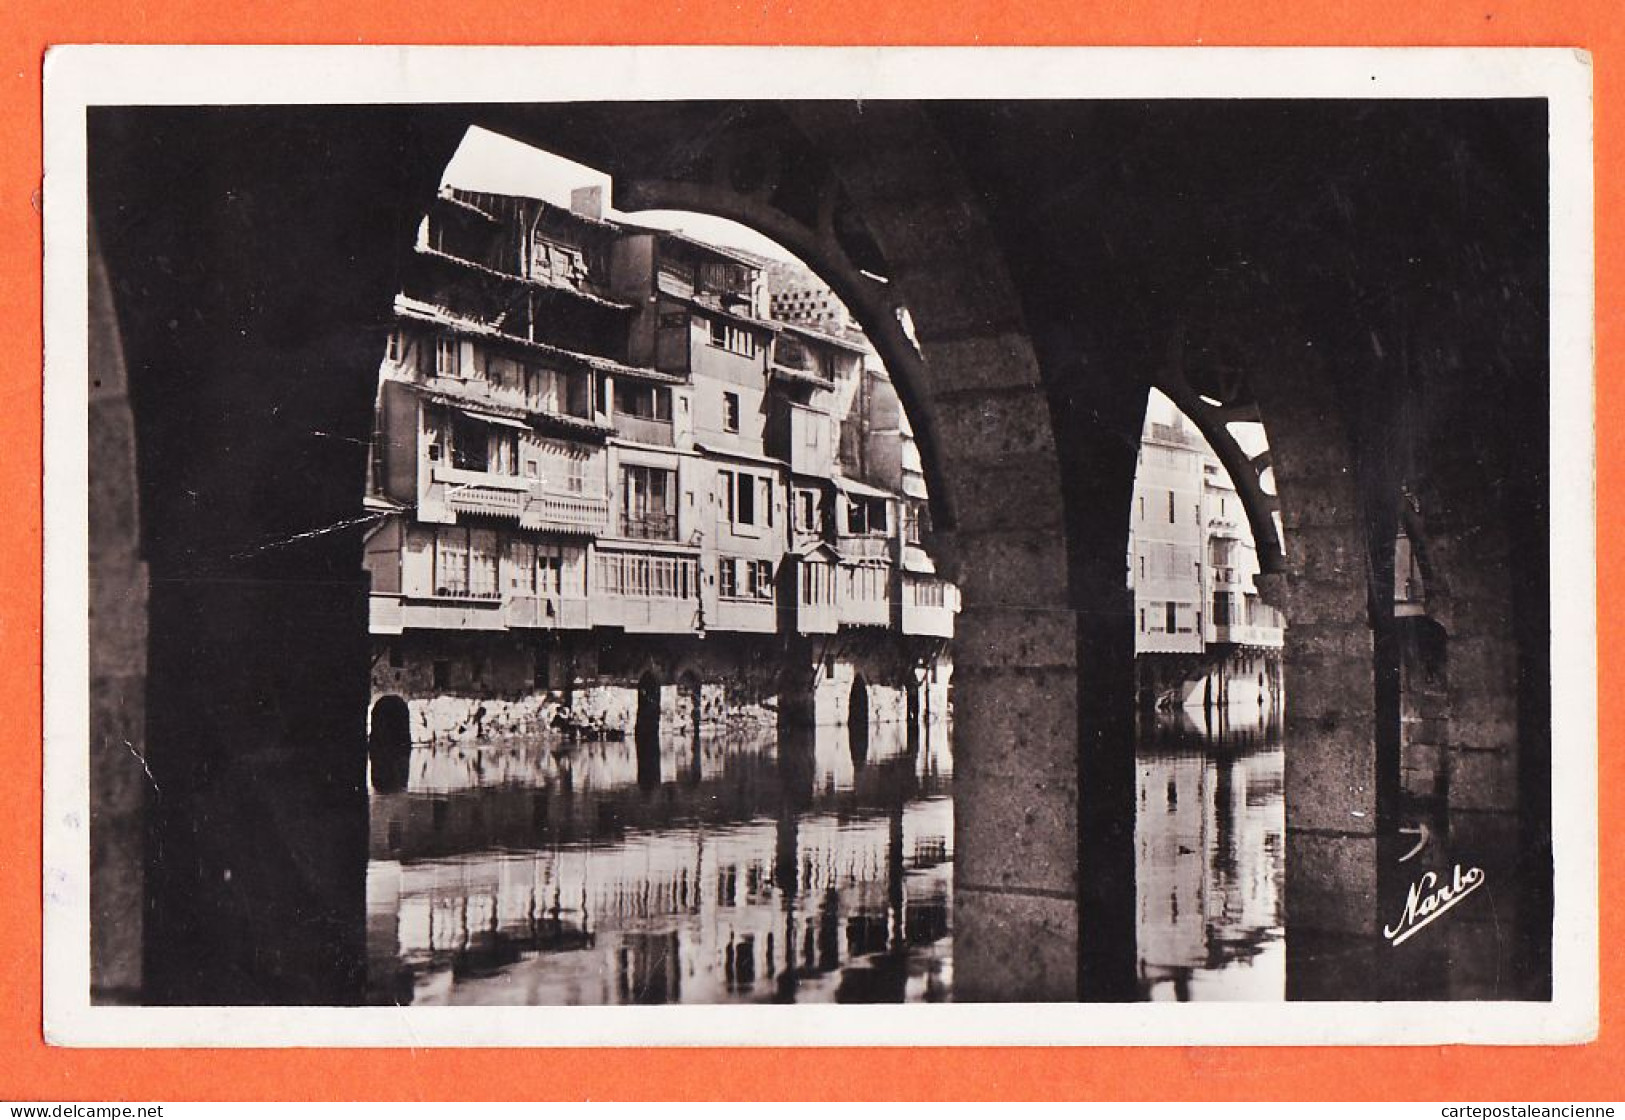 35712 / CASTRES 81-Tarn Vieilles Maisons Sur AGOUT Vue à Travers Arcades D'une Maison 1940s Photo-Bromure NARBO - Castres